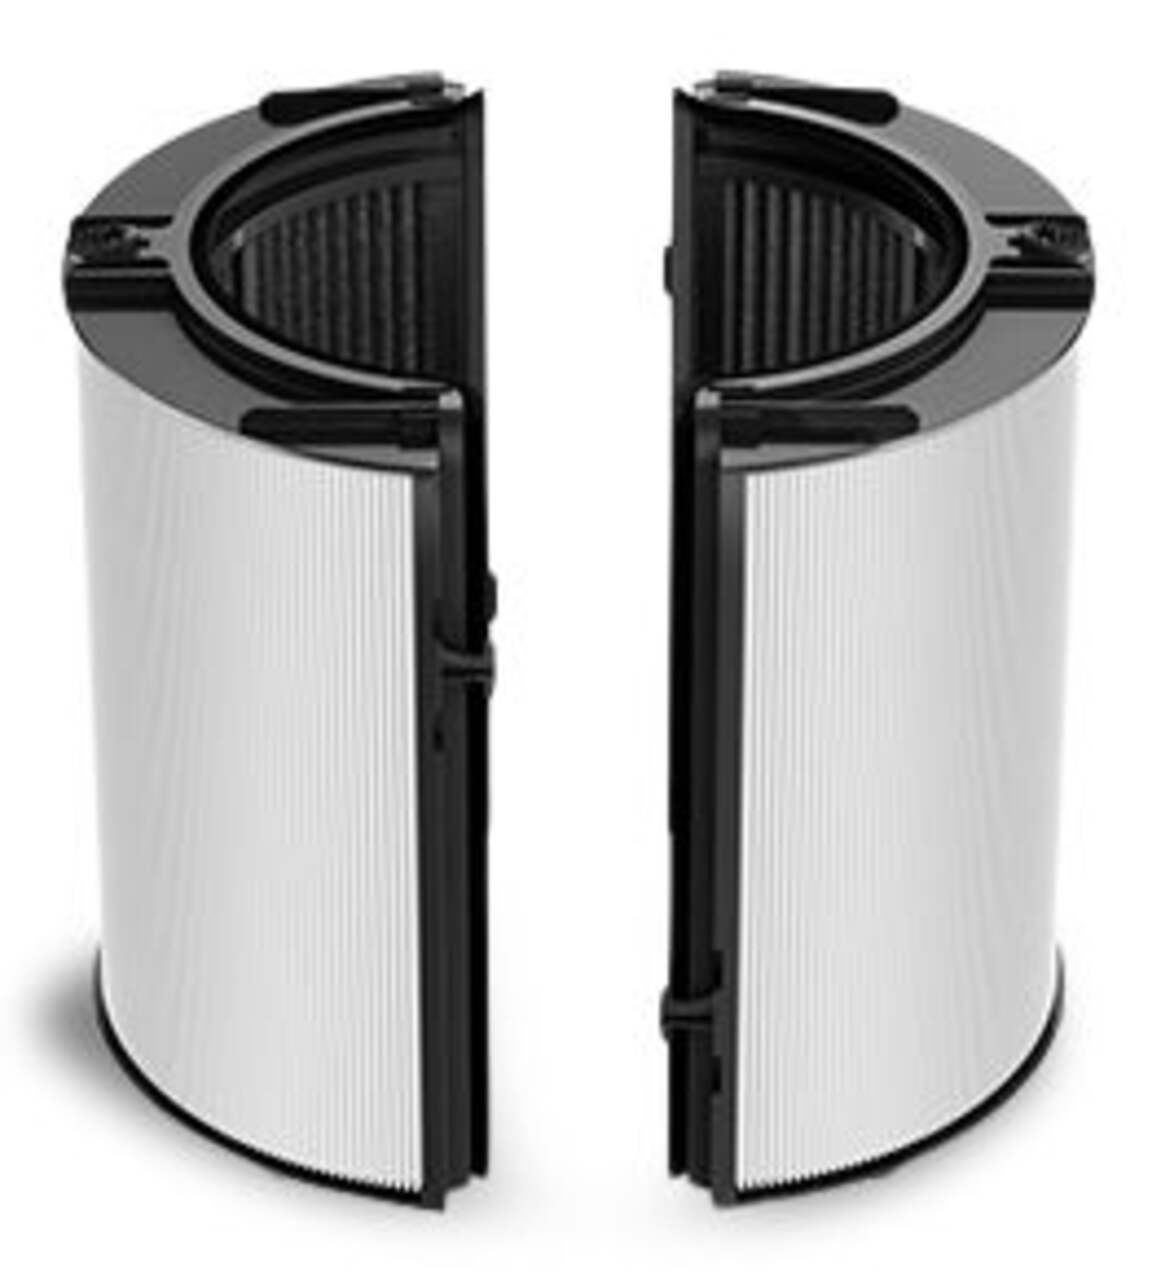 Purificateur d'air, ventilateur, chauffage DYSON HP09 Purifier Hot